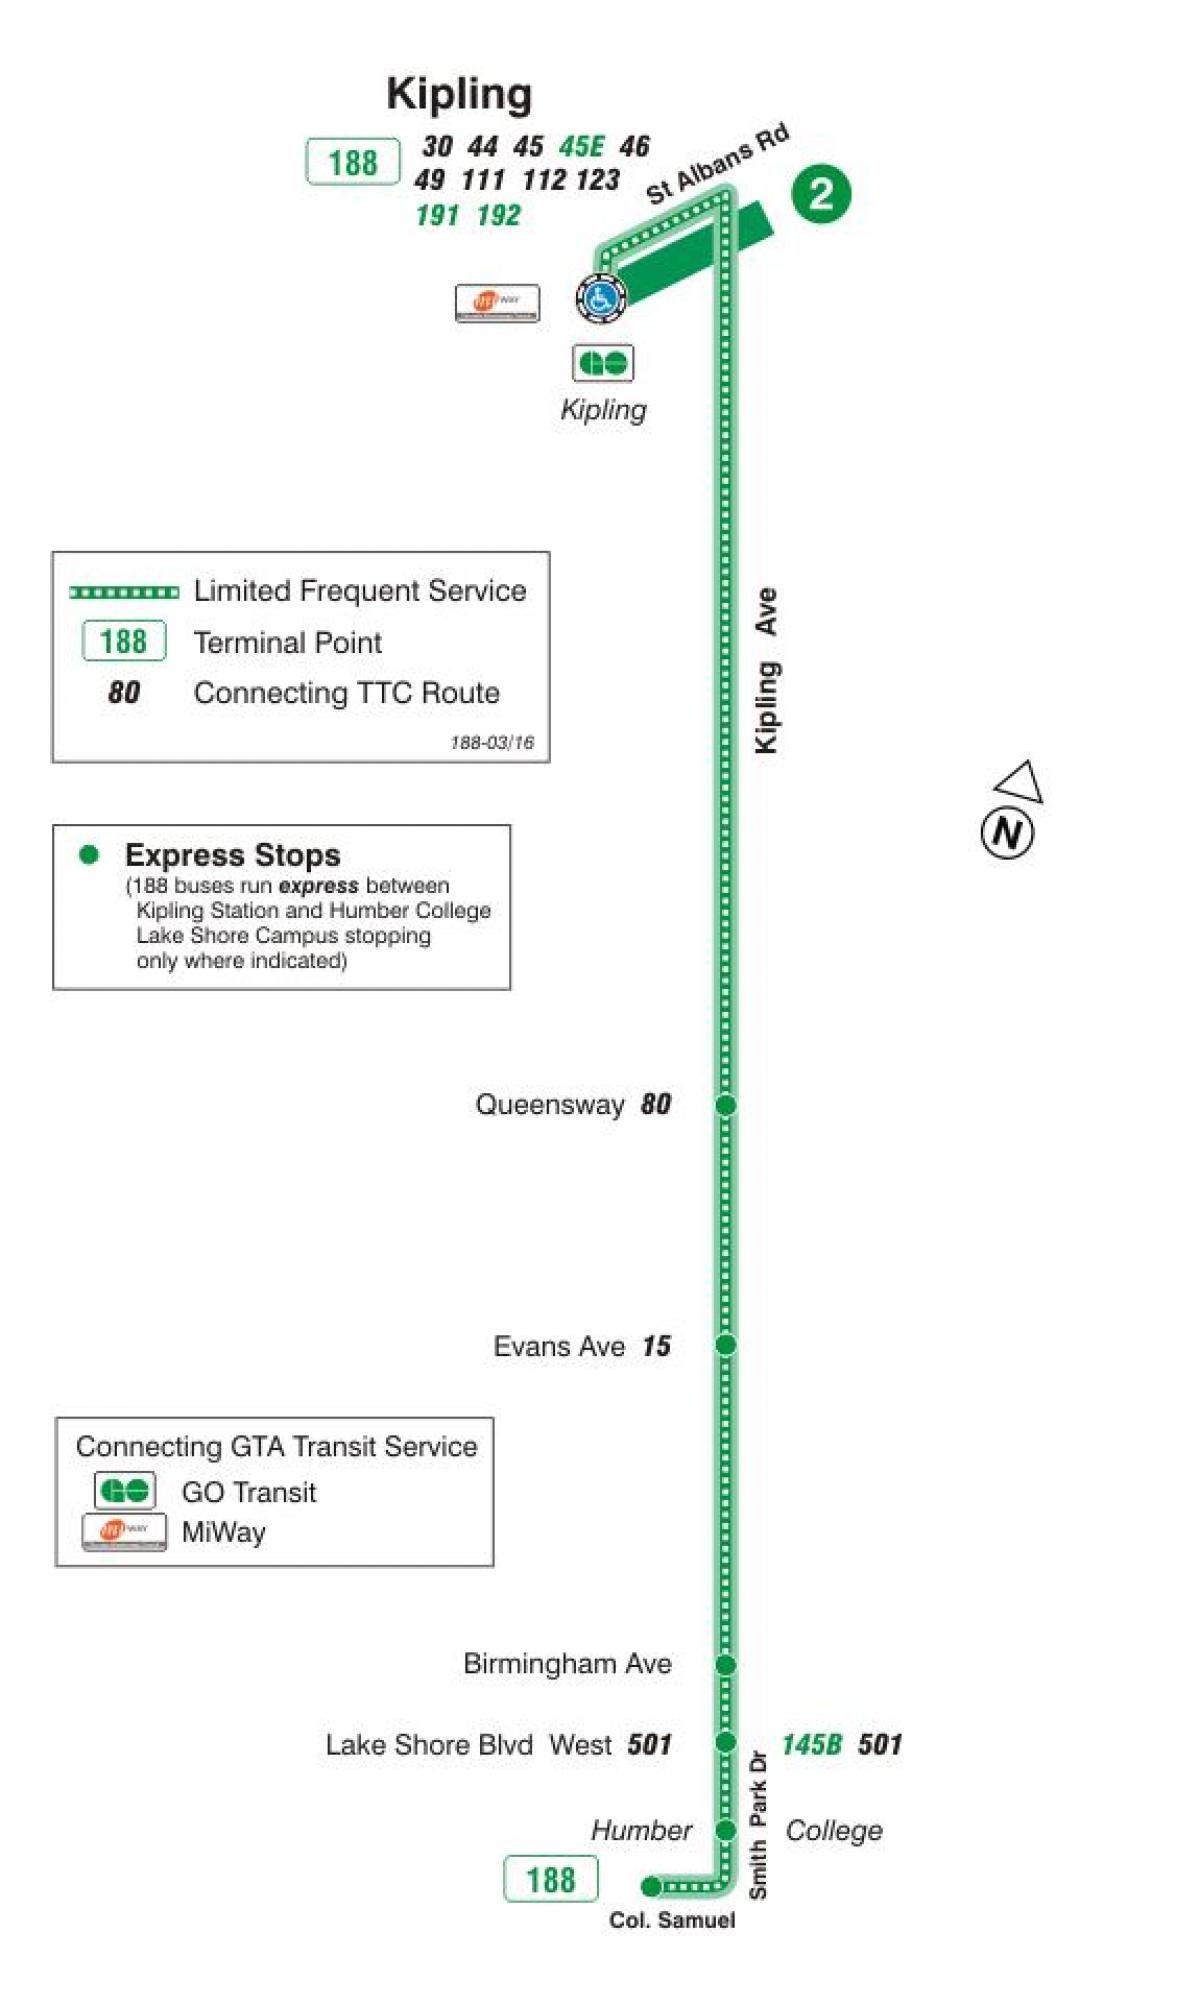 মানচিত্র TTC 188 কিপলিং দক্ষিণ রকেট বাস রুট টরন্টো